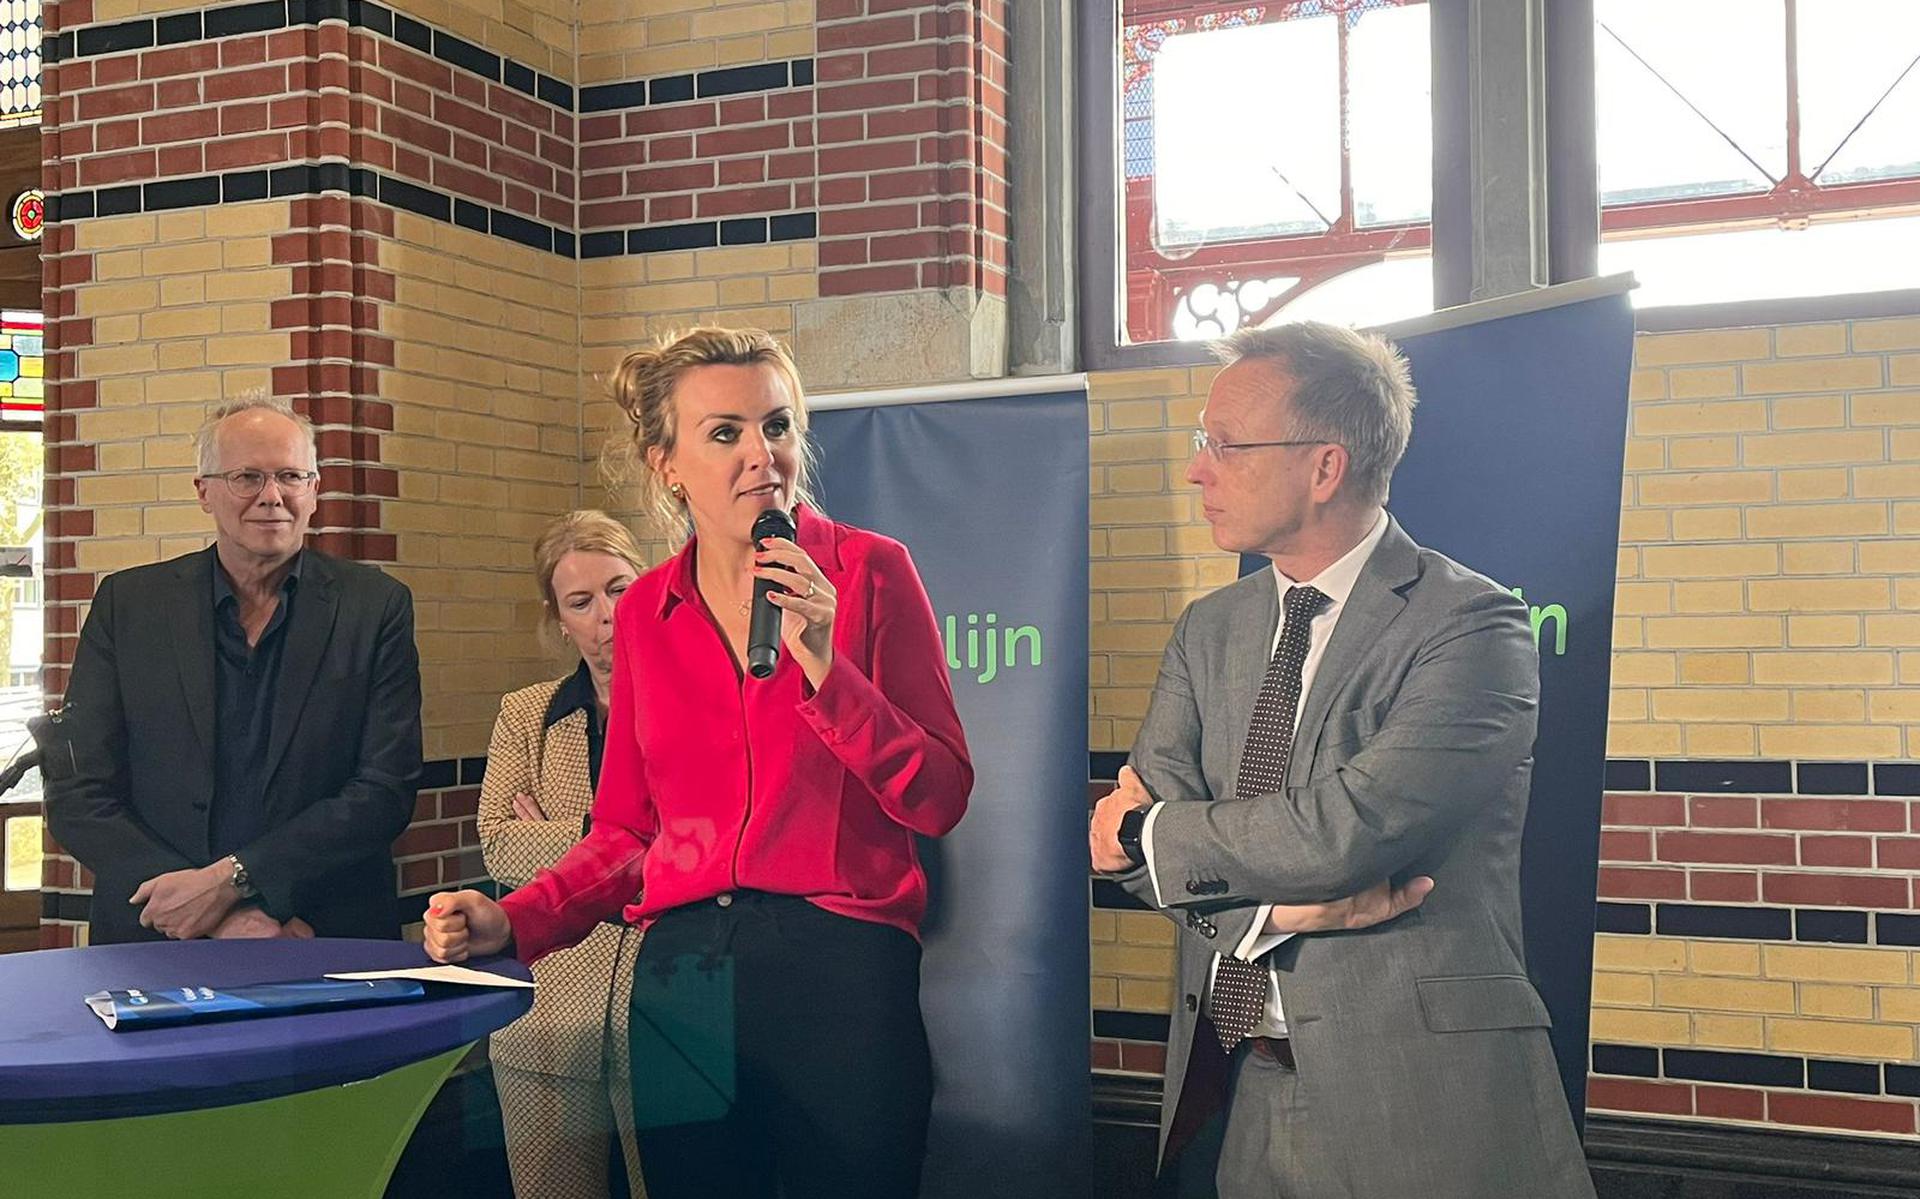 Minister Vivianne Heijnen, commissaris van de Koning René Paas en wethouder Philip Broeksma van de Gemeente Groningen. Foto: Provincie Groningen